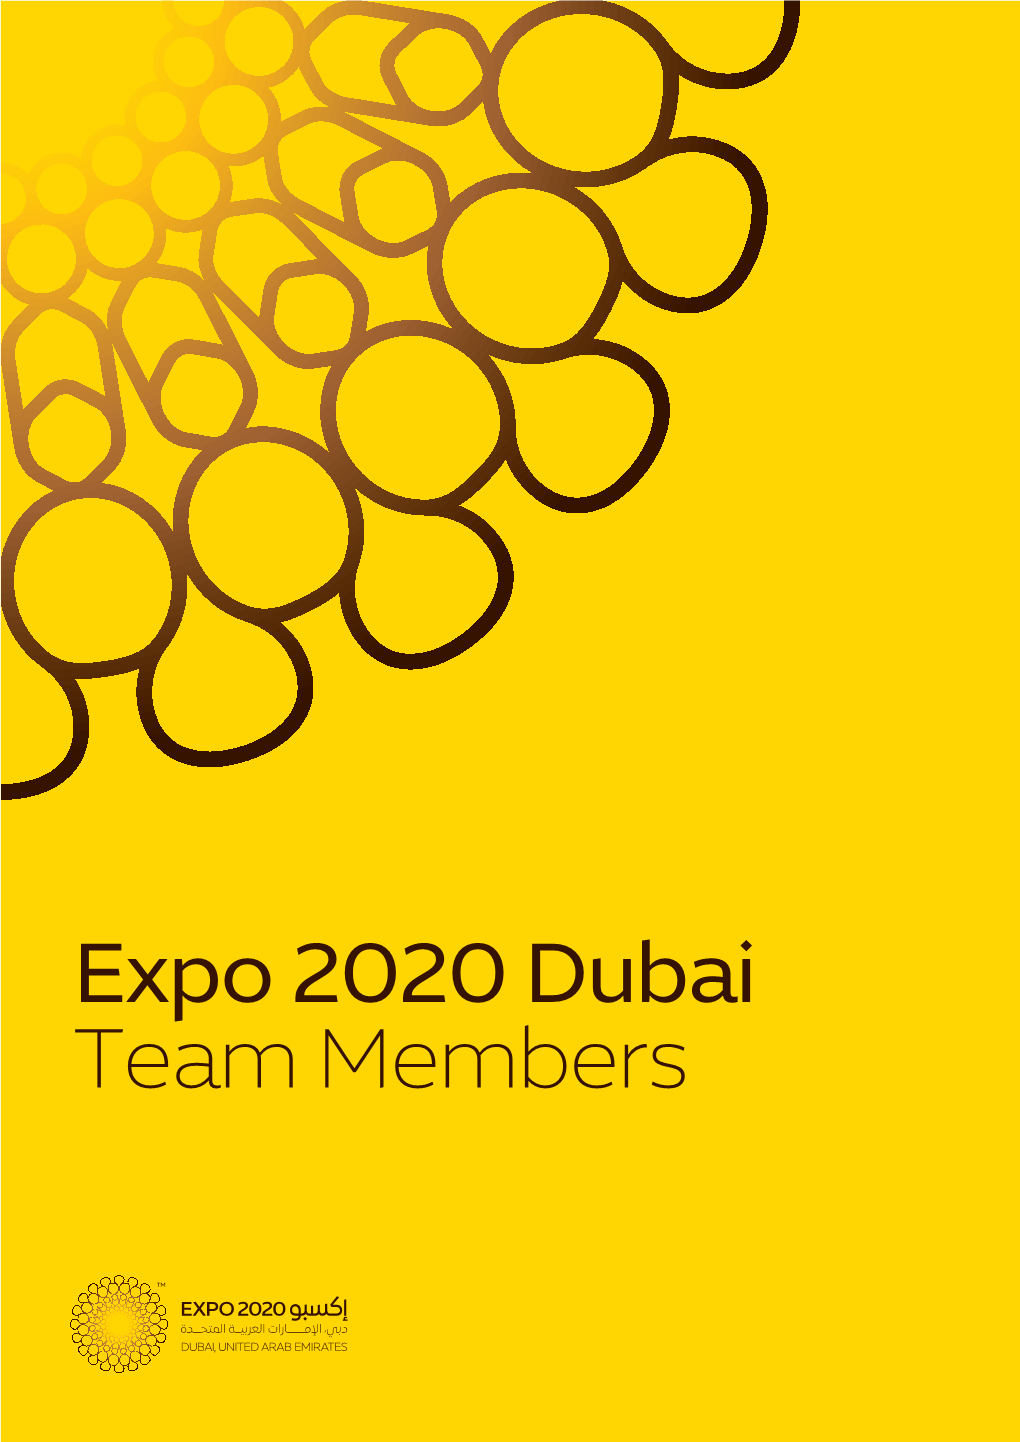 Expo 2020 Dubai Team Members Expo 2020 Dubai Team Members